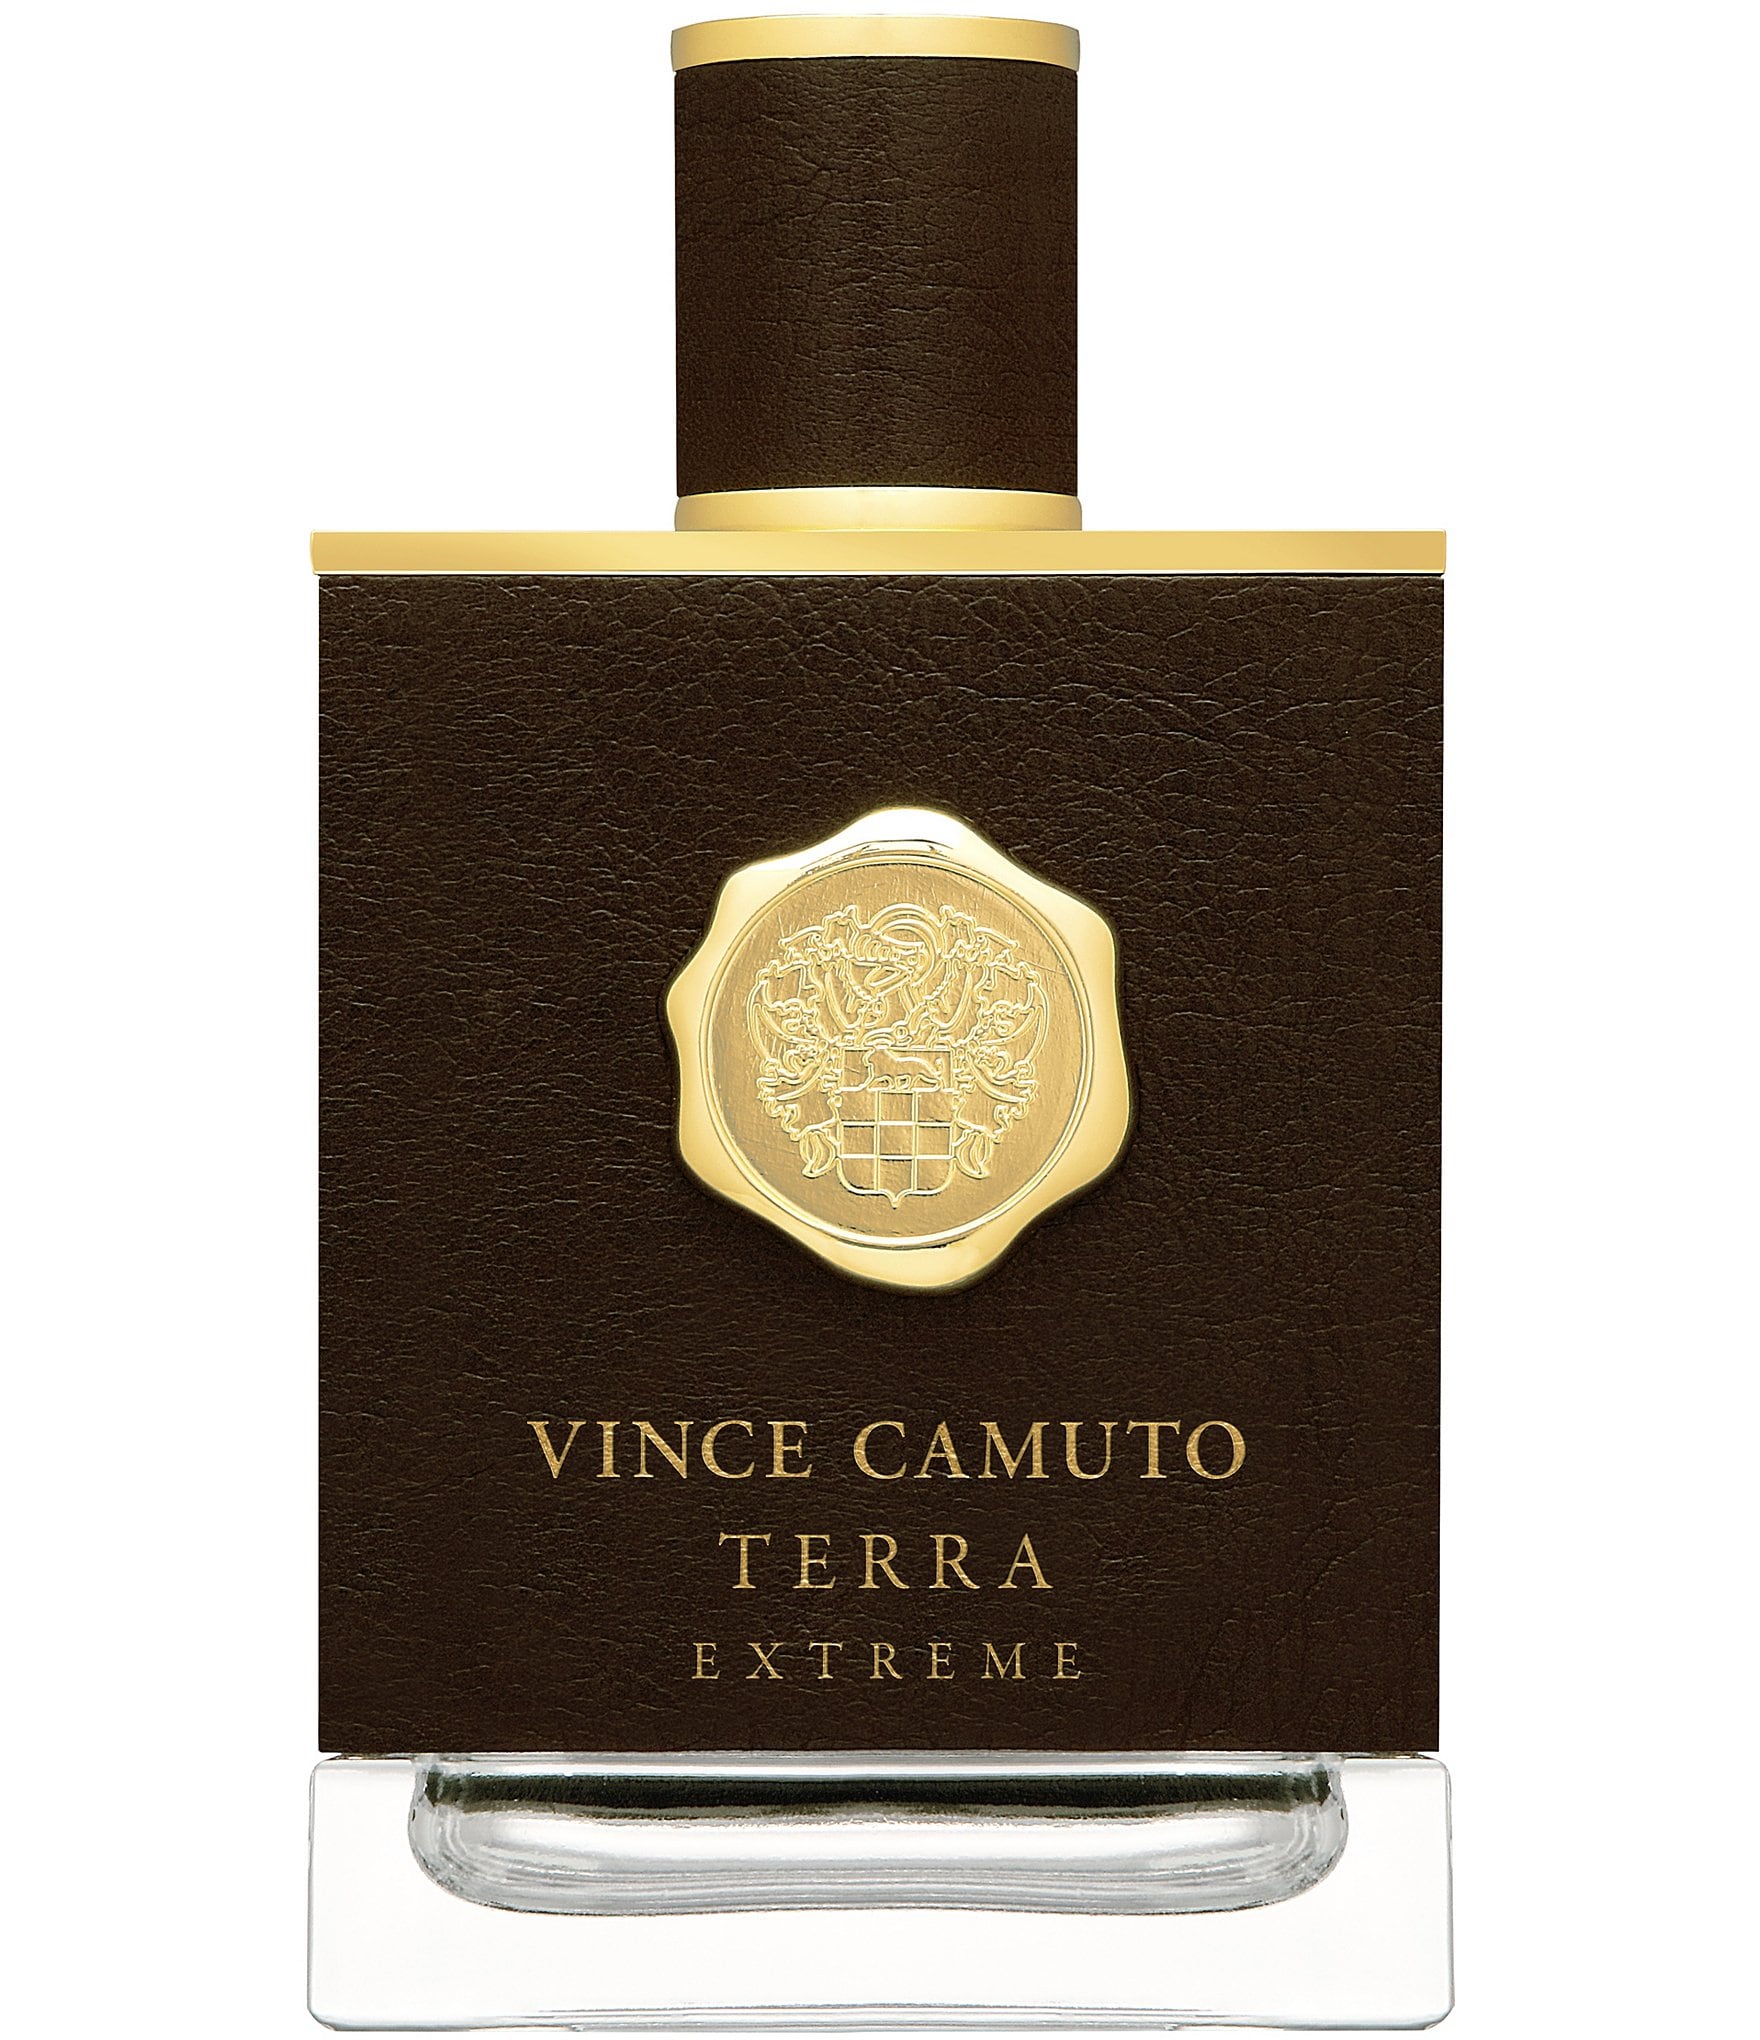 Vince Camuto Terra Extreme Eau de Parfum - 3.4 oz.